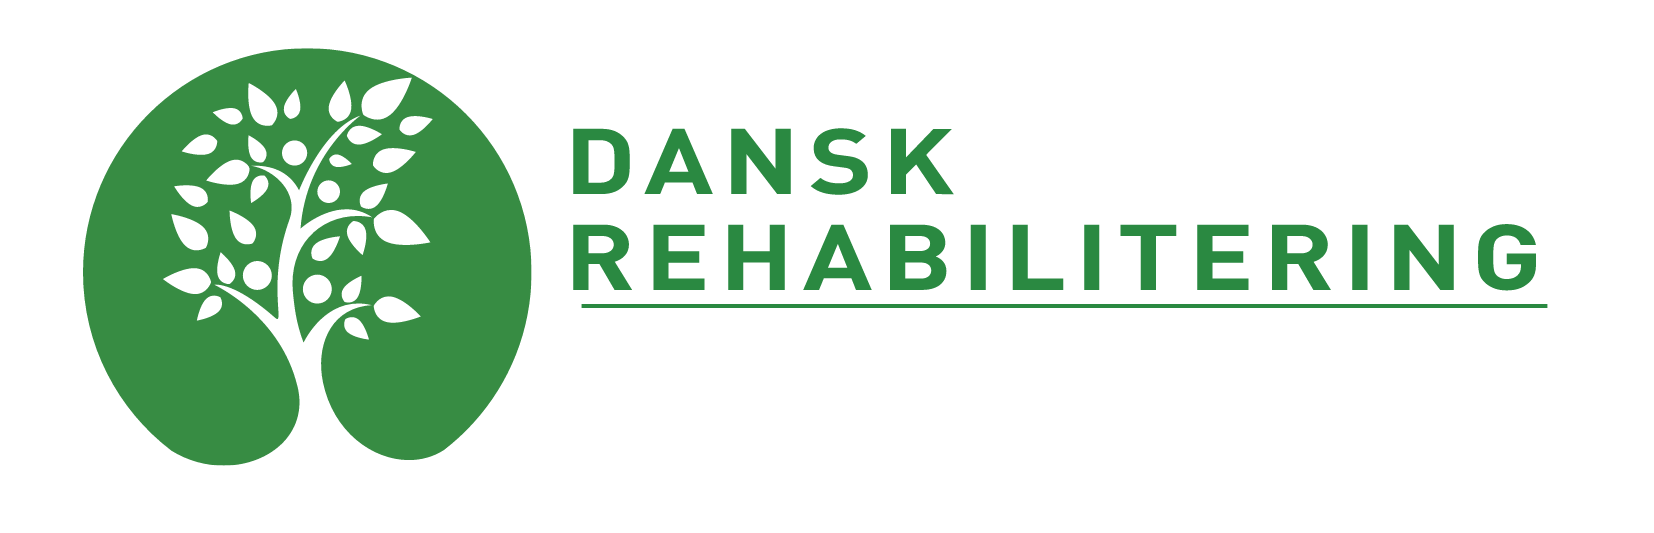 Dansk Rehabilitering logo